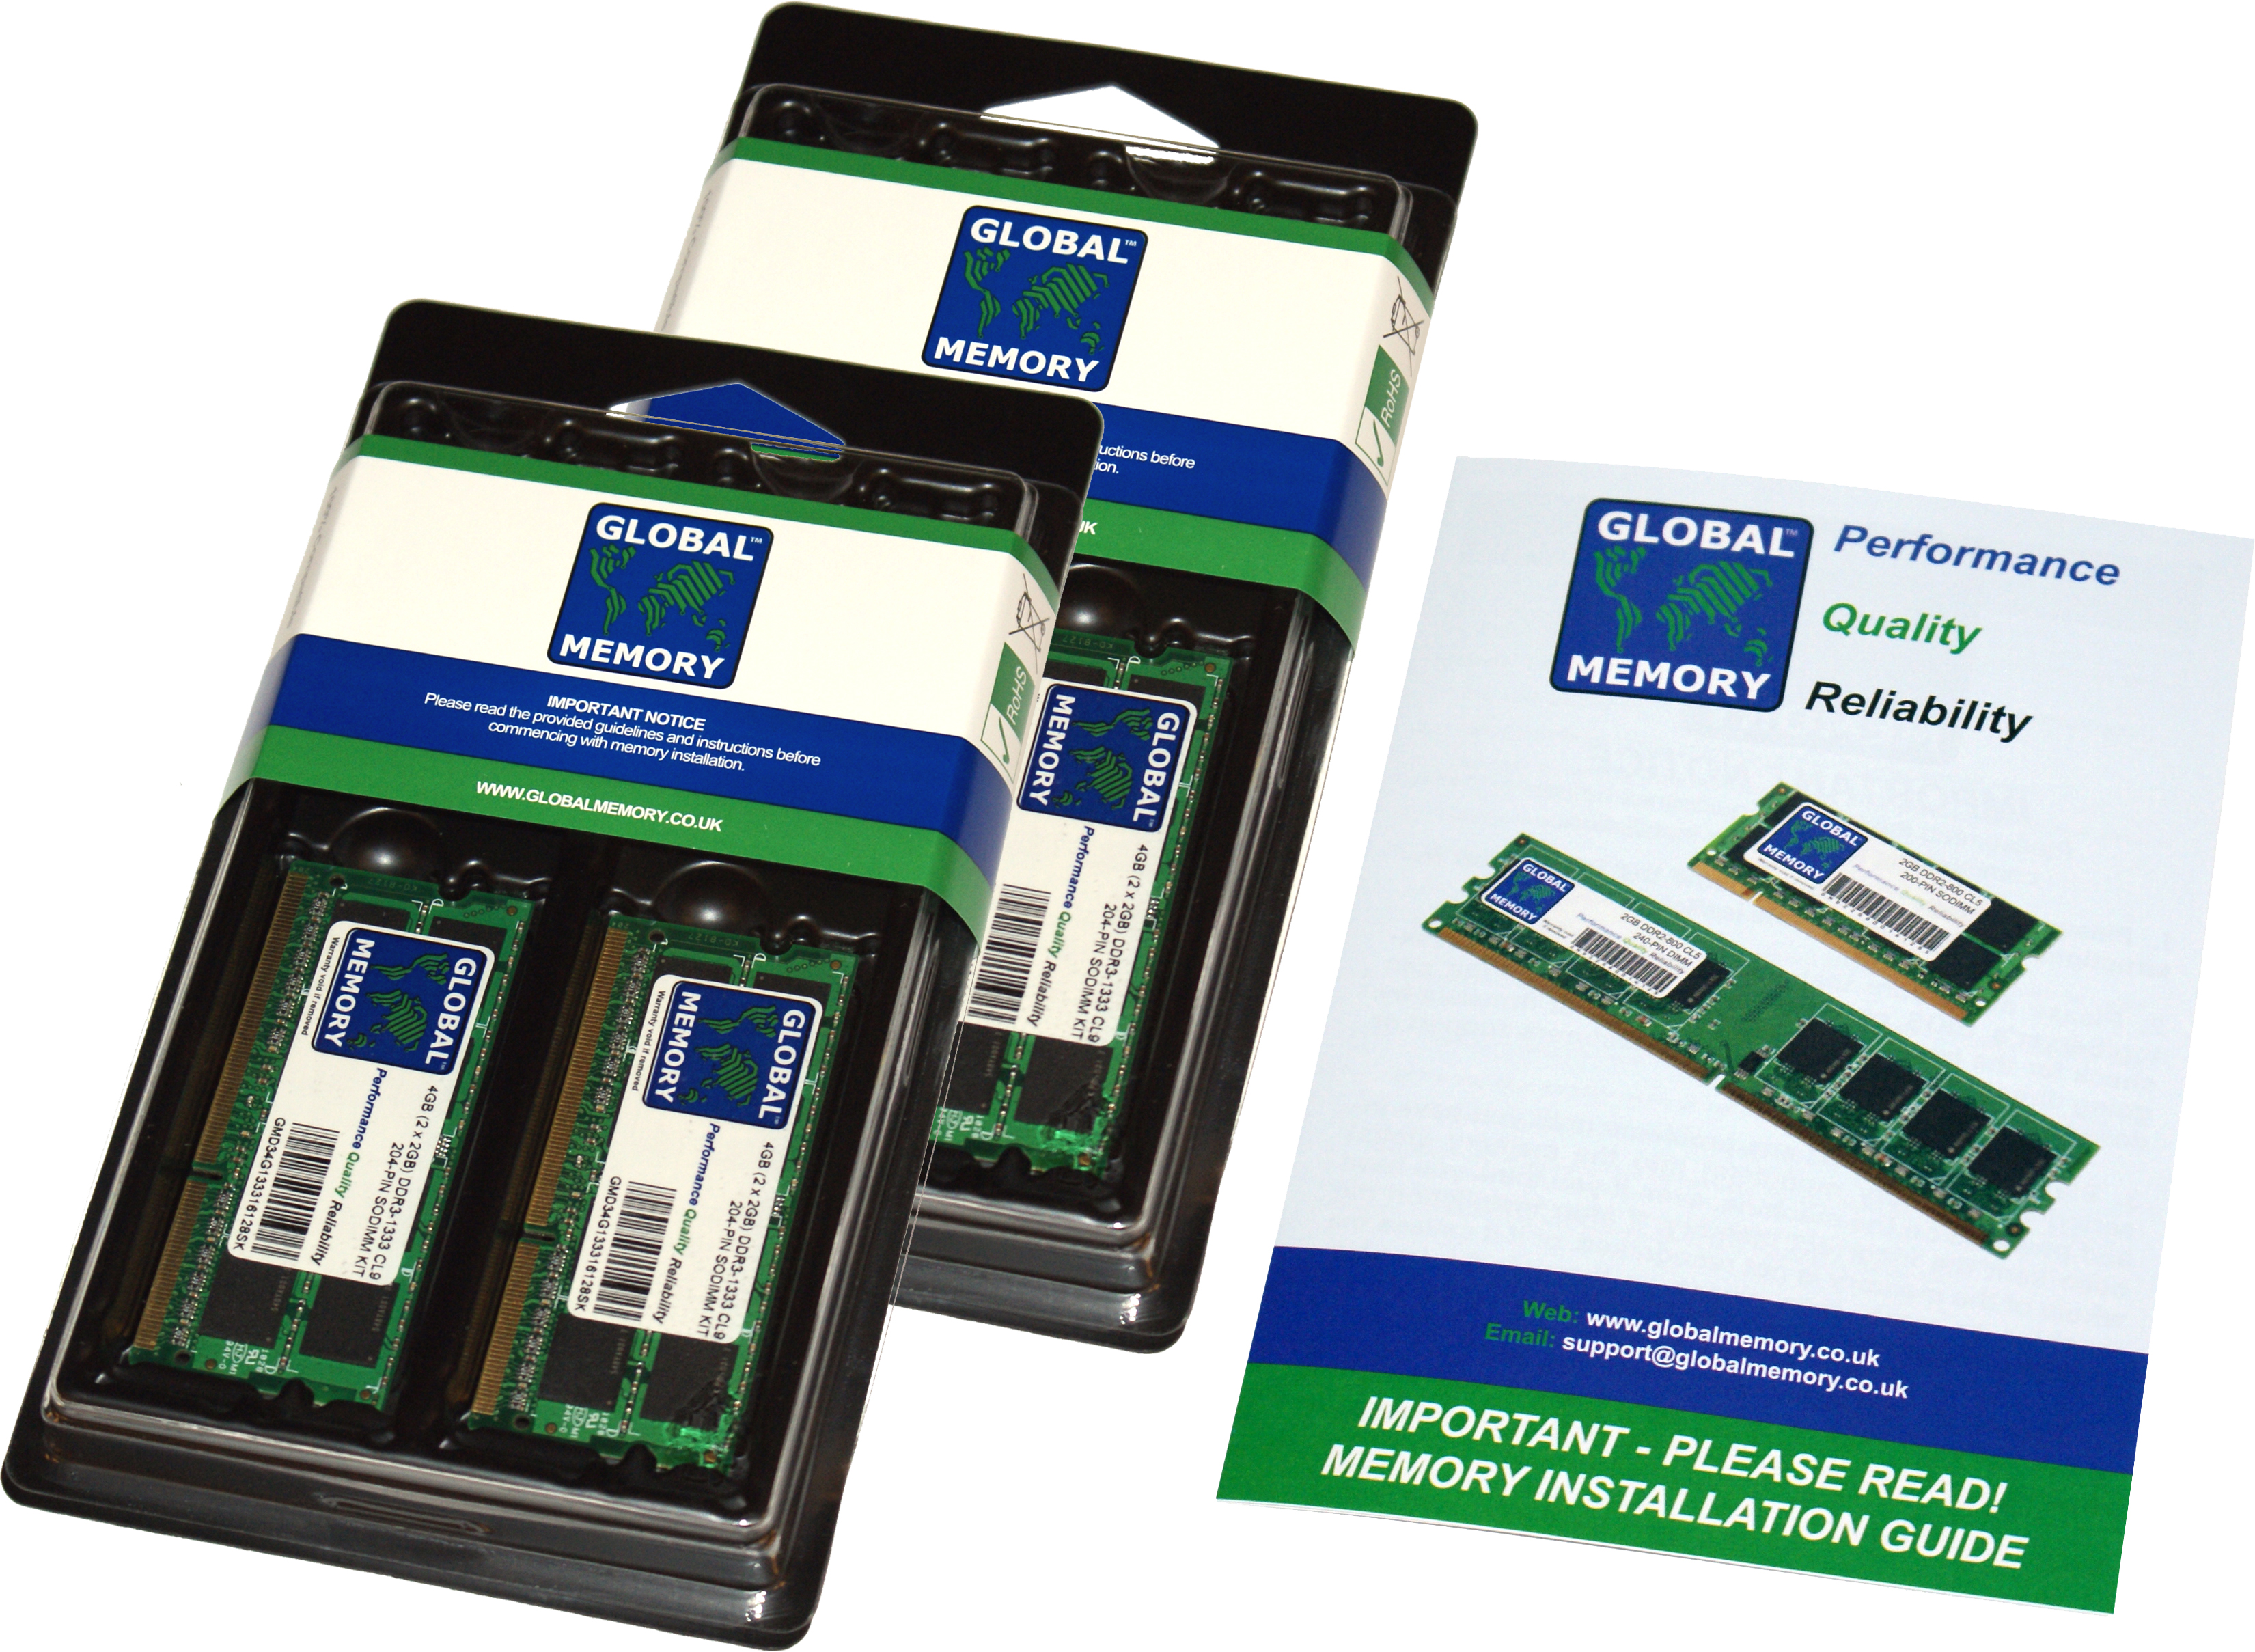 32GB (2 x 16GB) DDR4 2666MHz PC4-21300 260-PIN SODIMM MEMORY RAM KIT FOR FUJITSU LAPTOPS/NOTEBOOKS